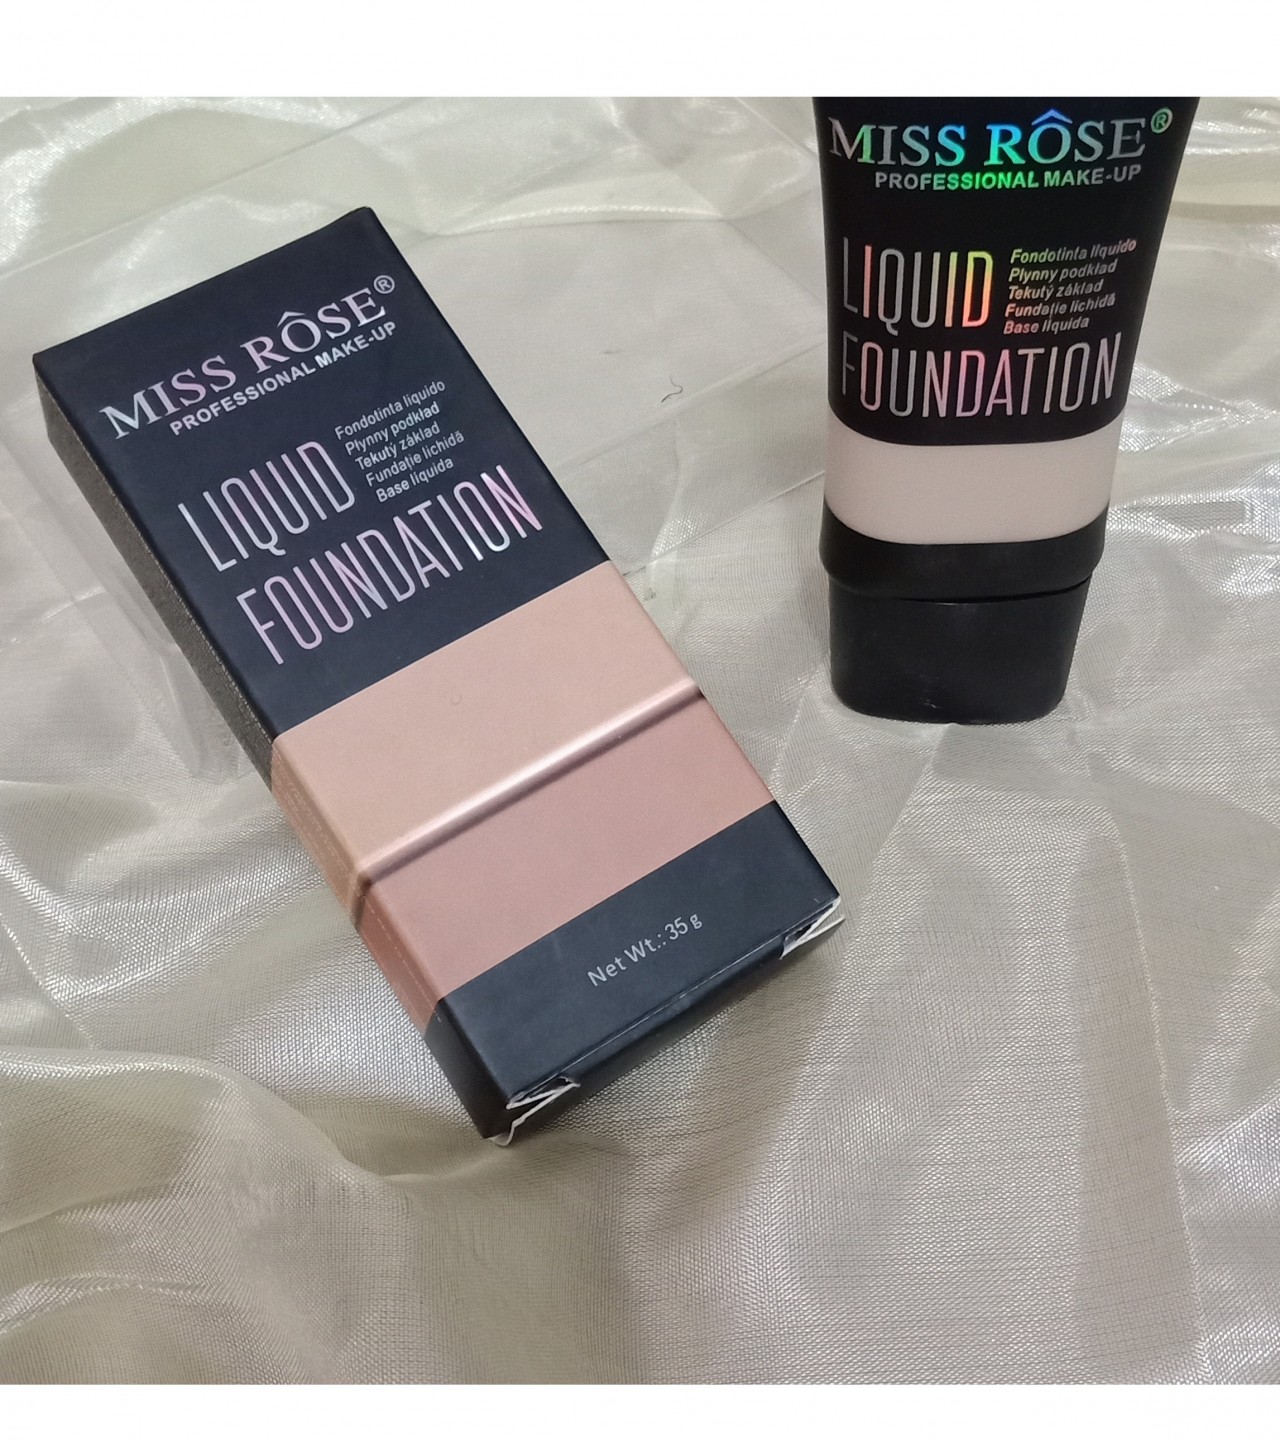 Miss rose liquid foundation